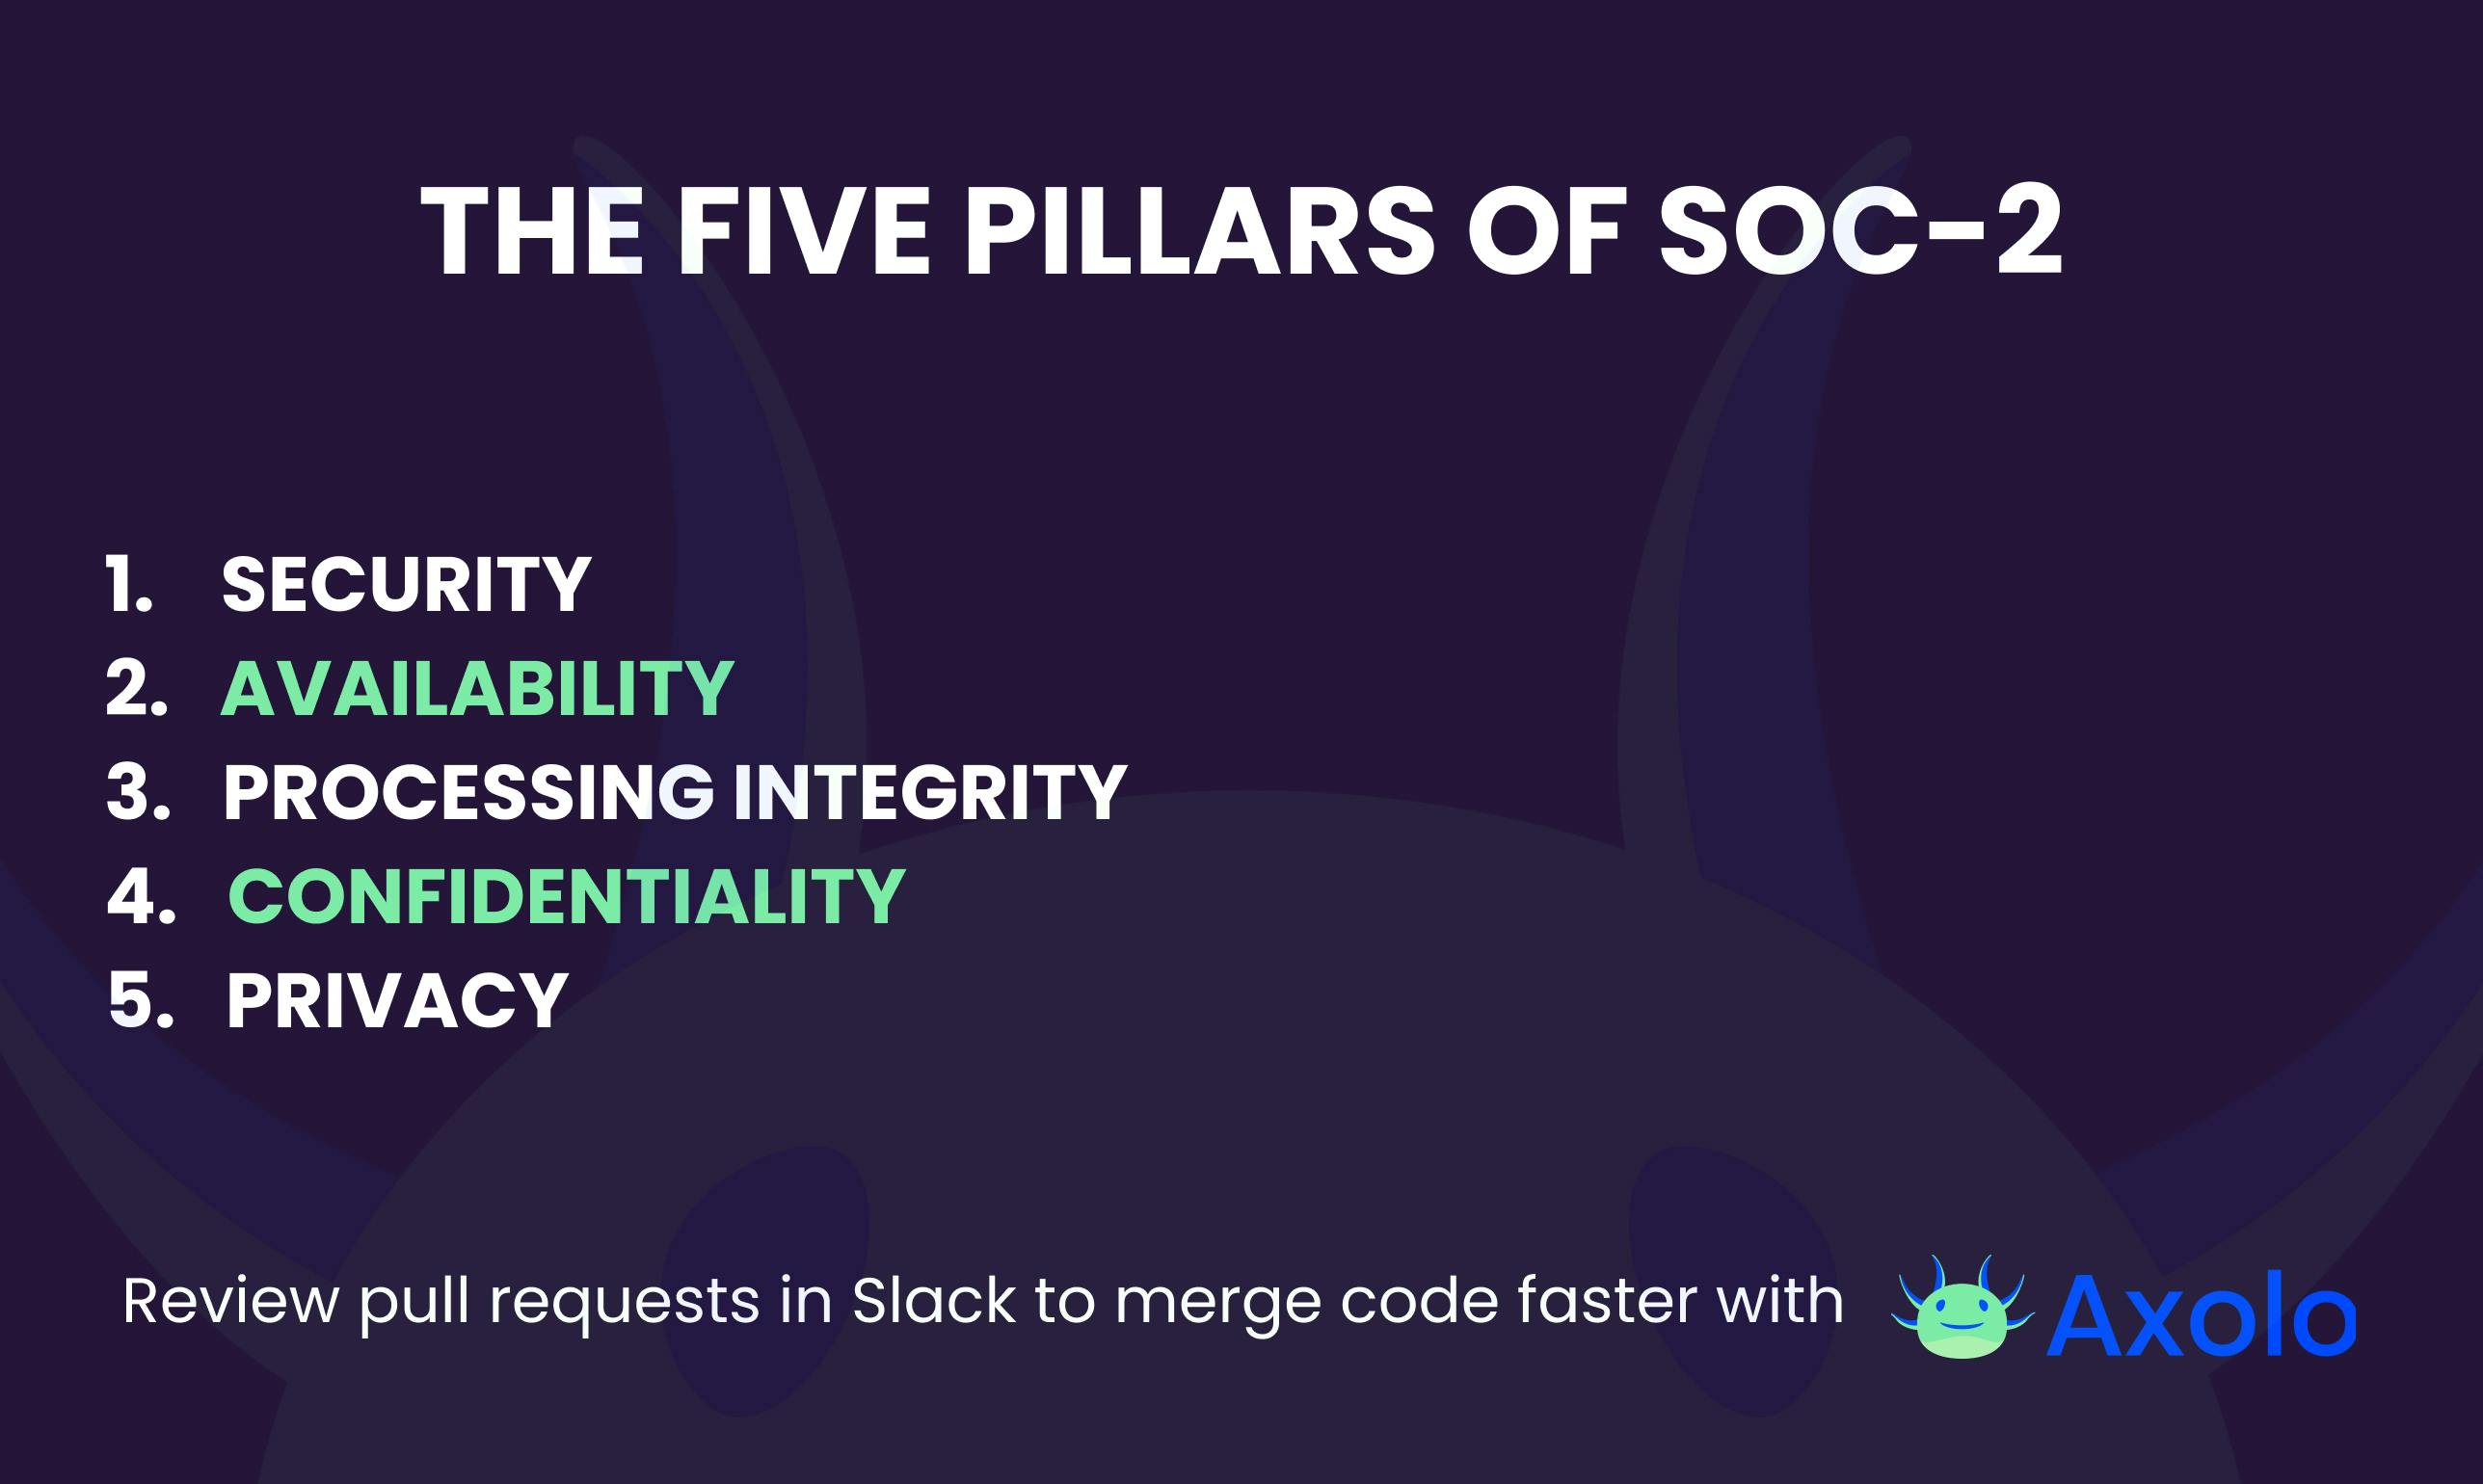 The five pillars of SOC-2